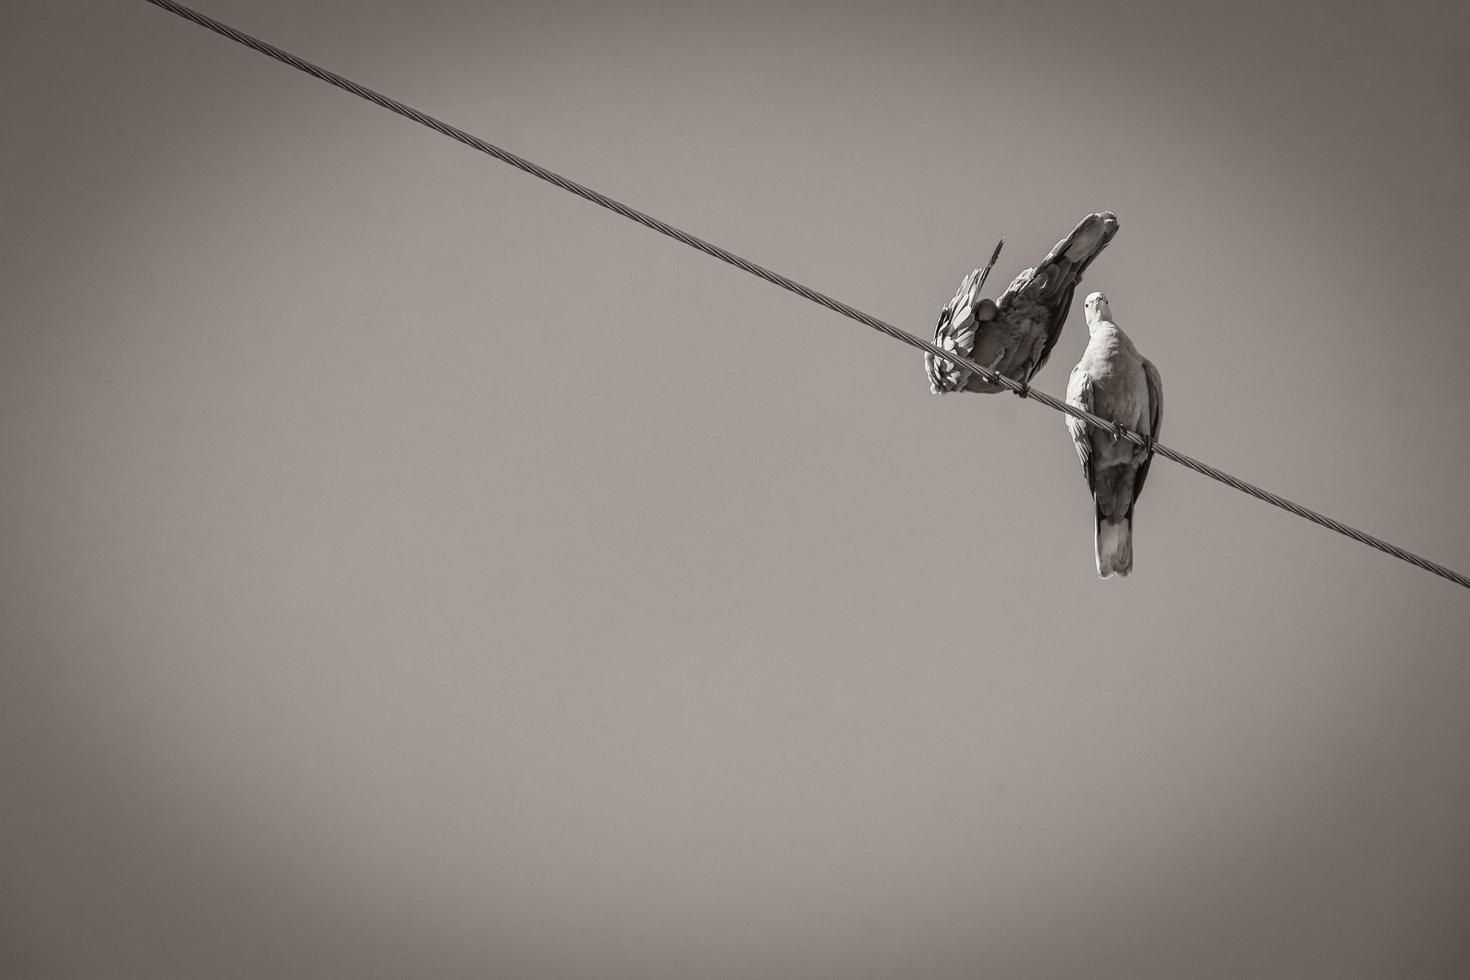 duiven duiven vogels zitten op hoogspanningslijn in mexico. foto